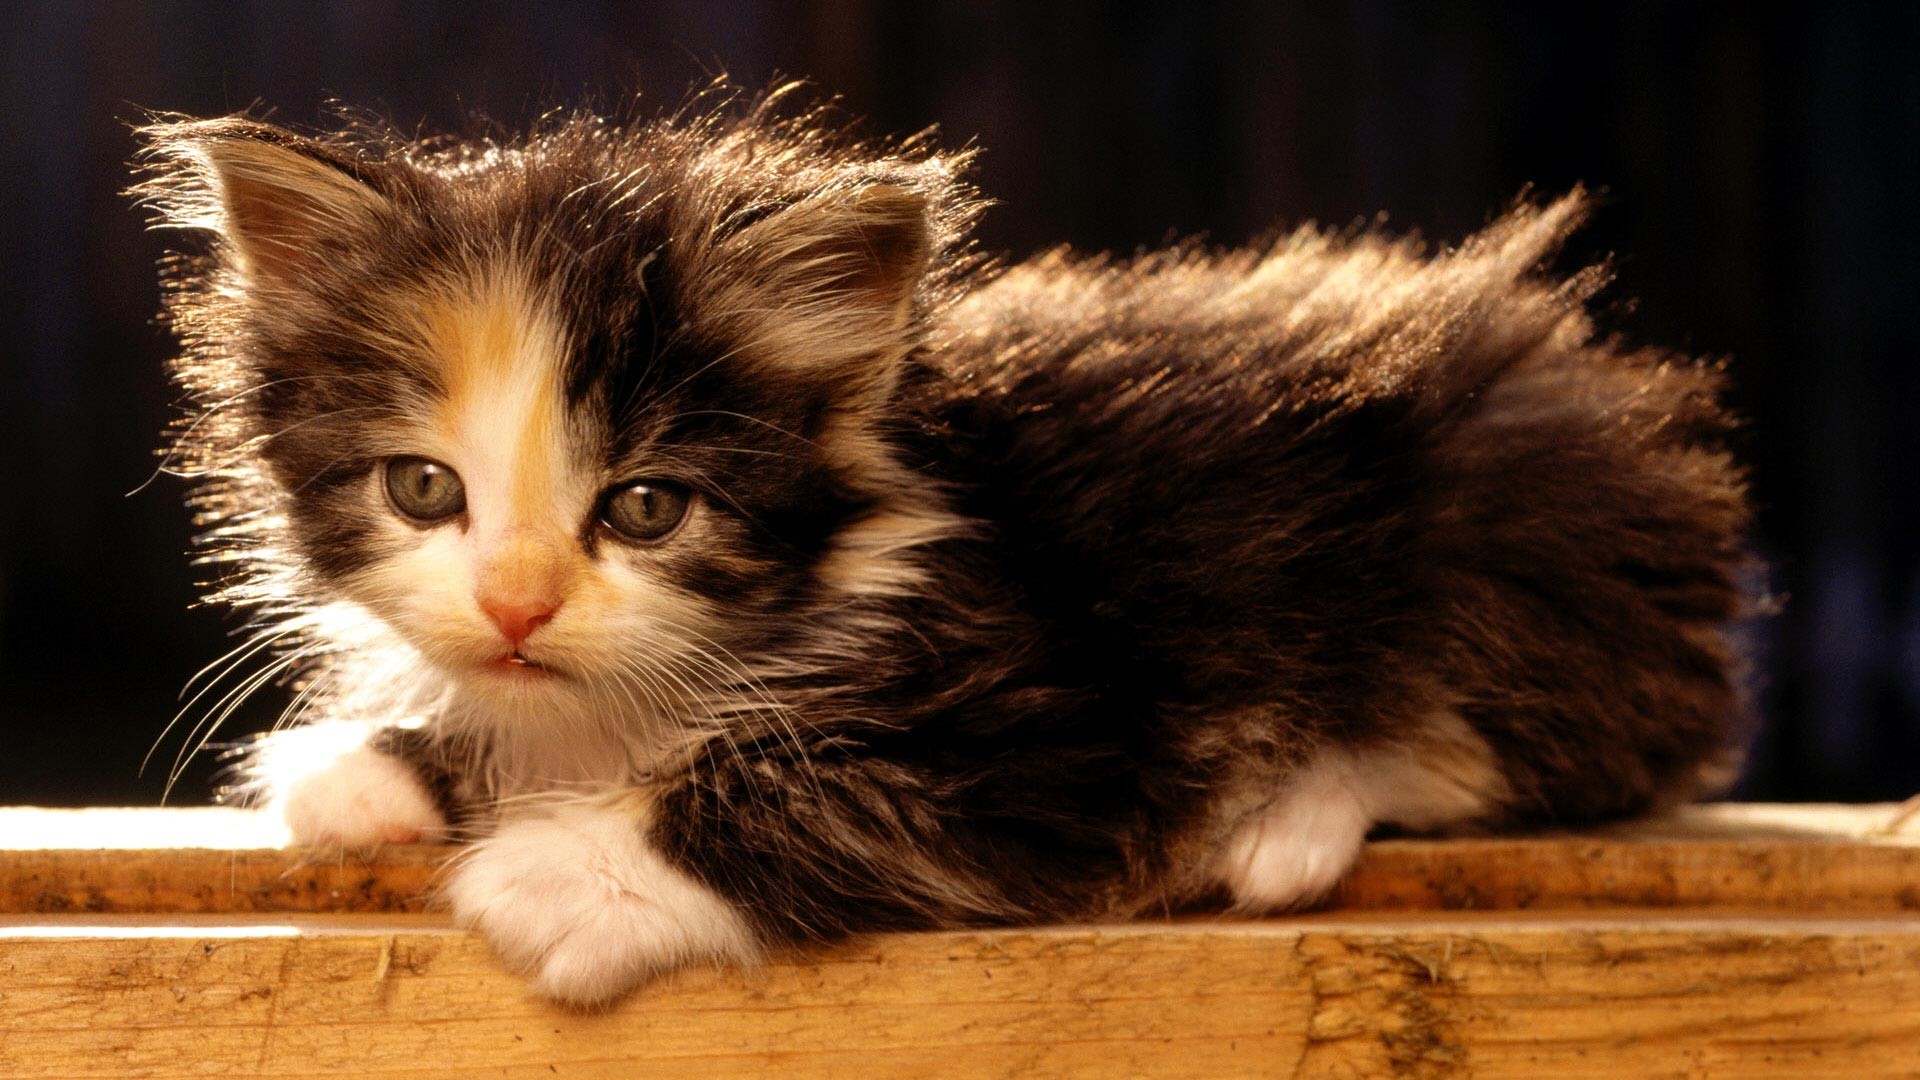 Cute Fluffy Kittens